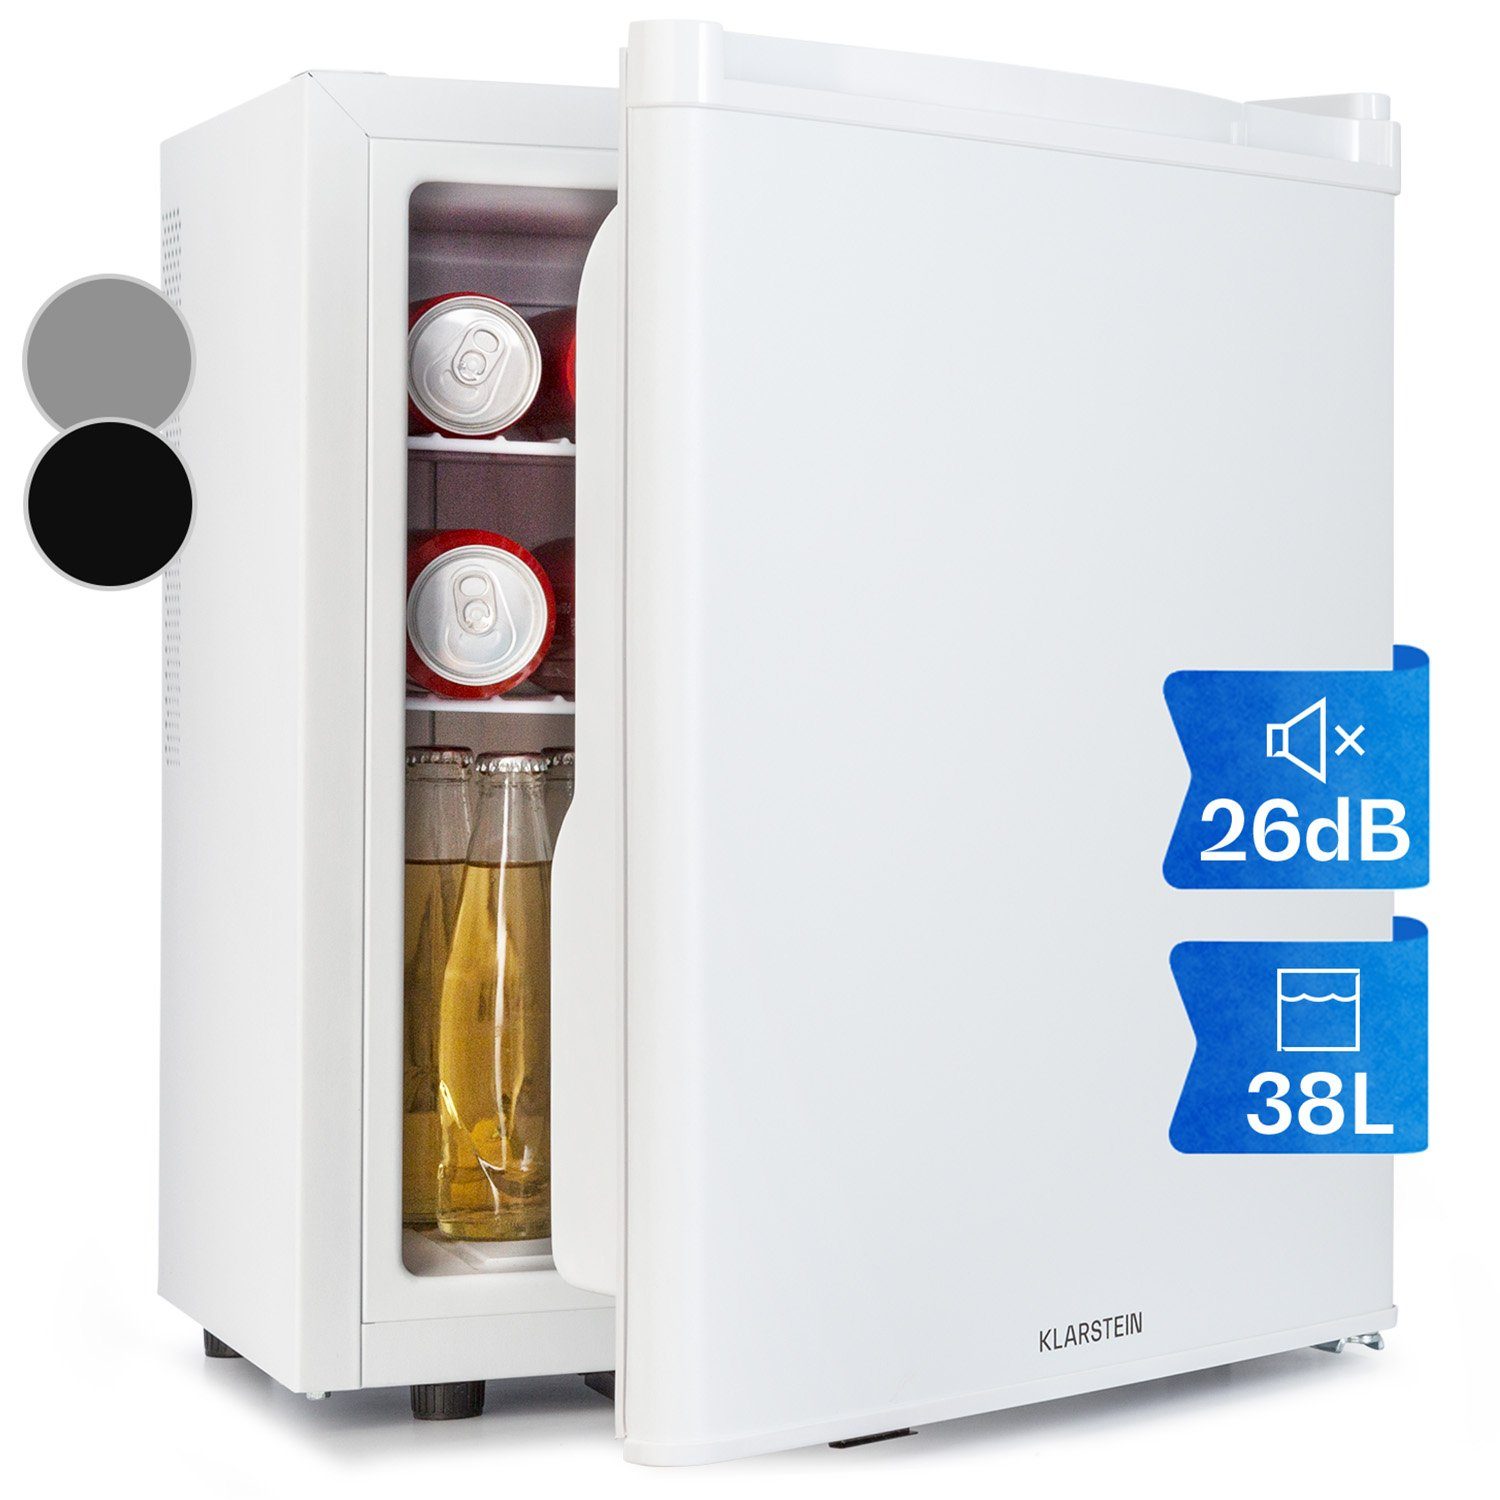 Mini-Kühlschrank KB05-V-151F weiss